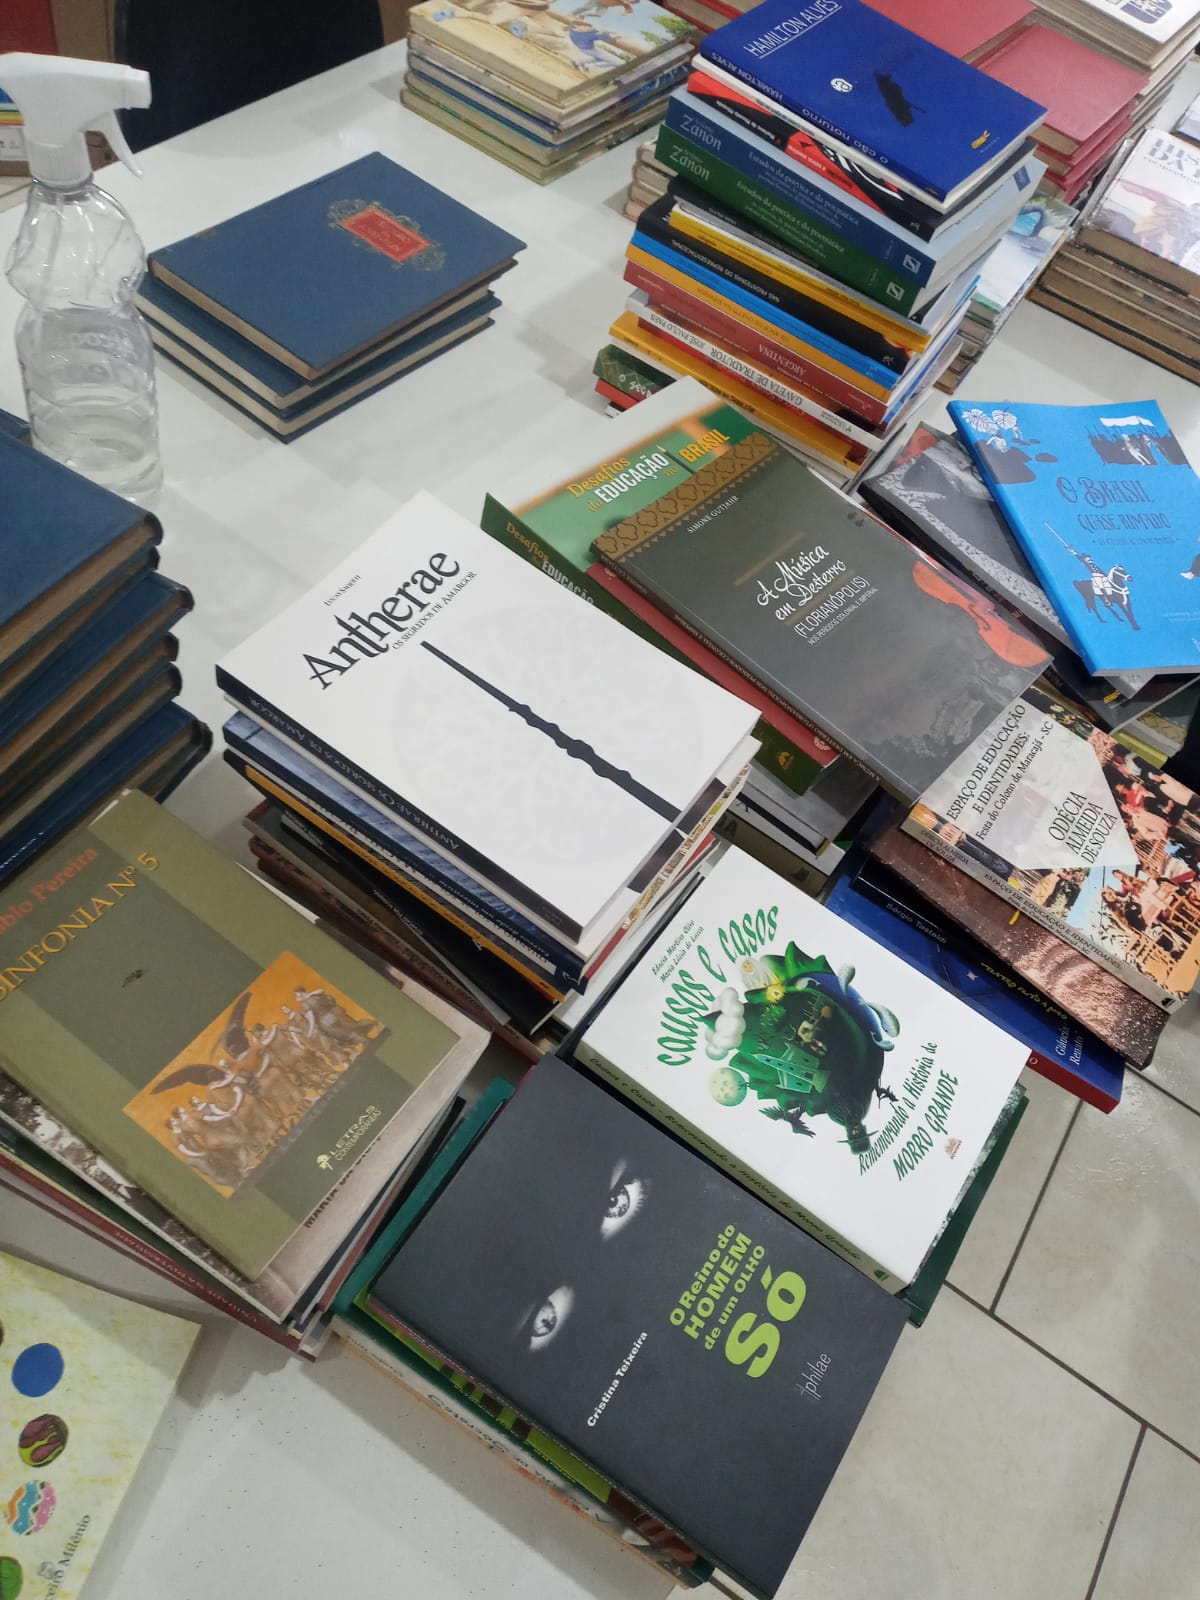 Biblioteca municipal de Siderópolis recebe doação de 90 livros de literatura regional e estadual